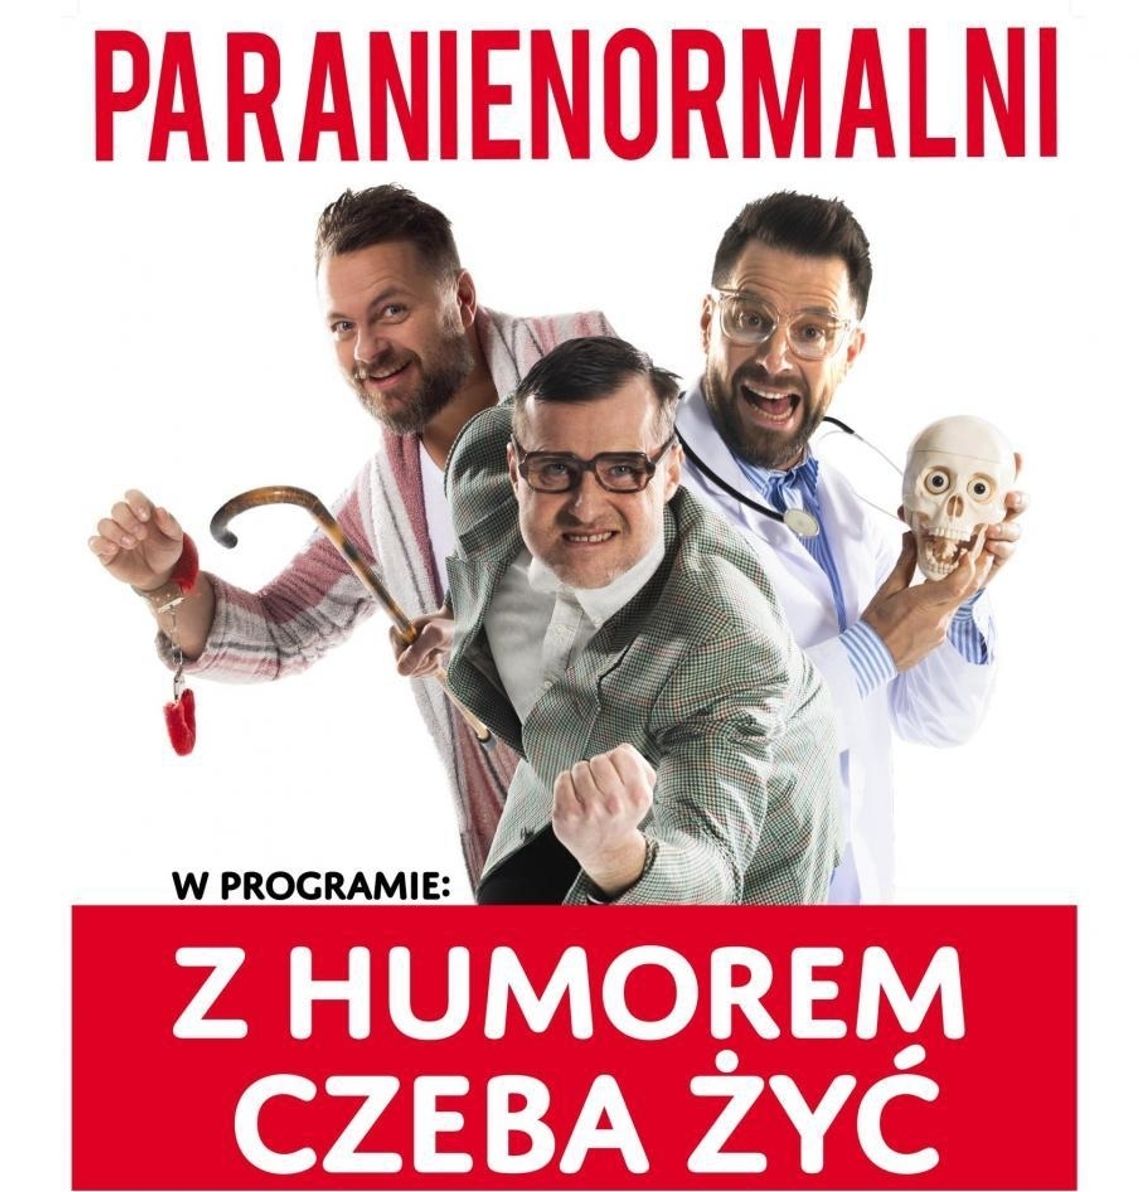 Nowy termin występu kabaretu Paranienormalni 